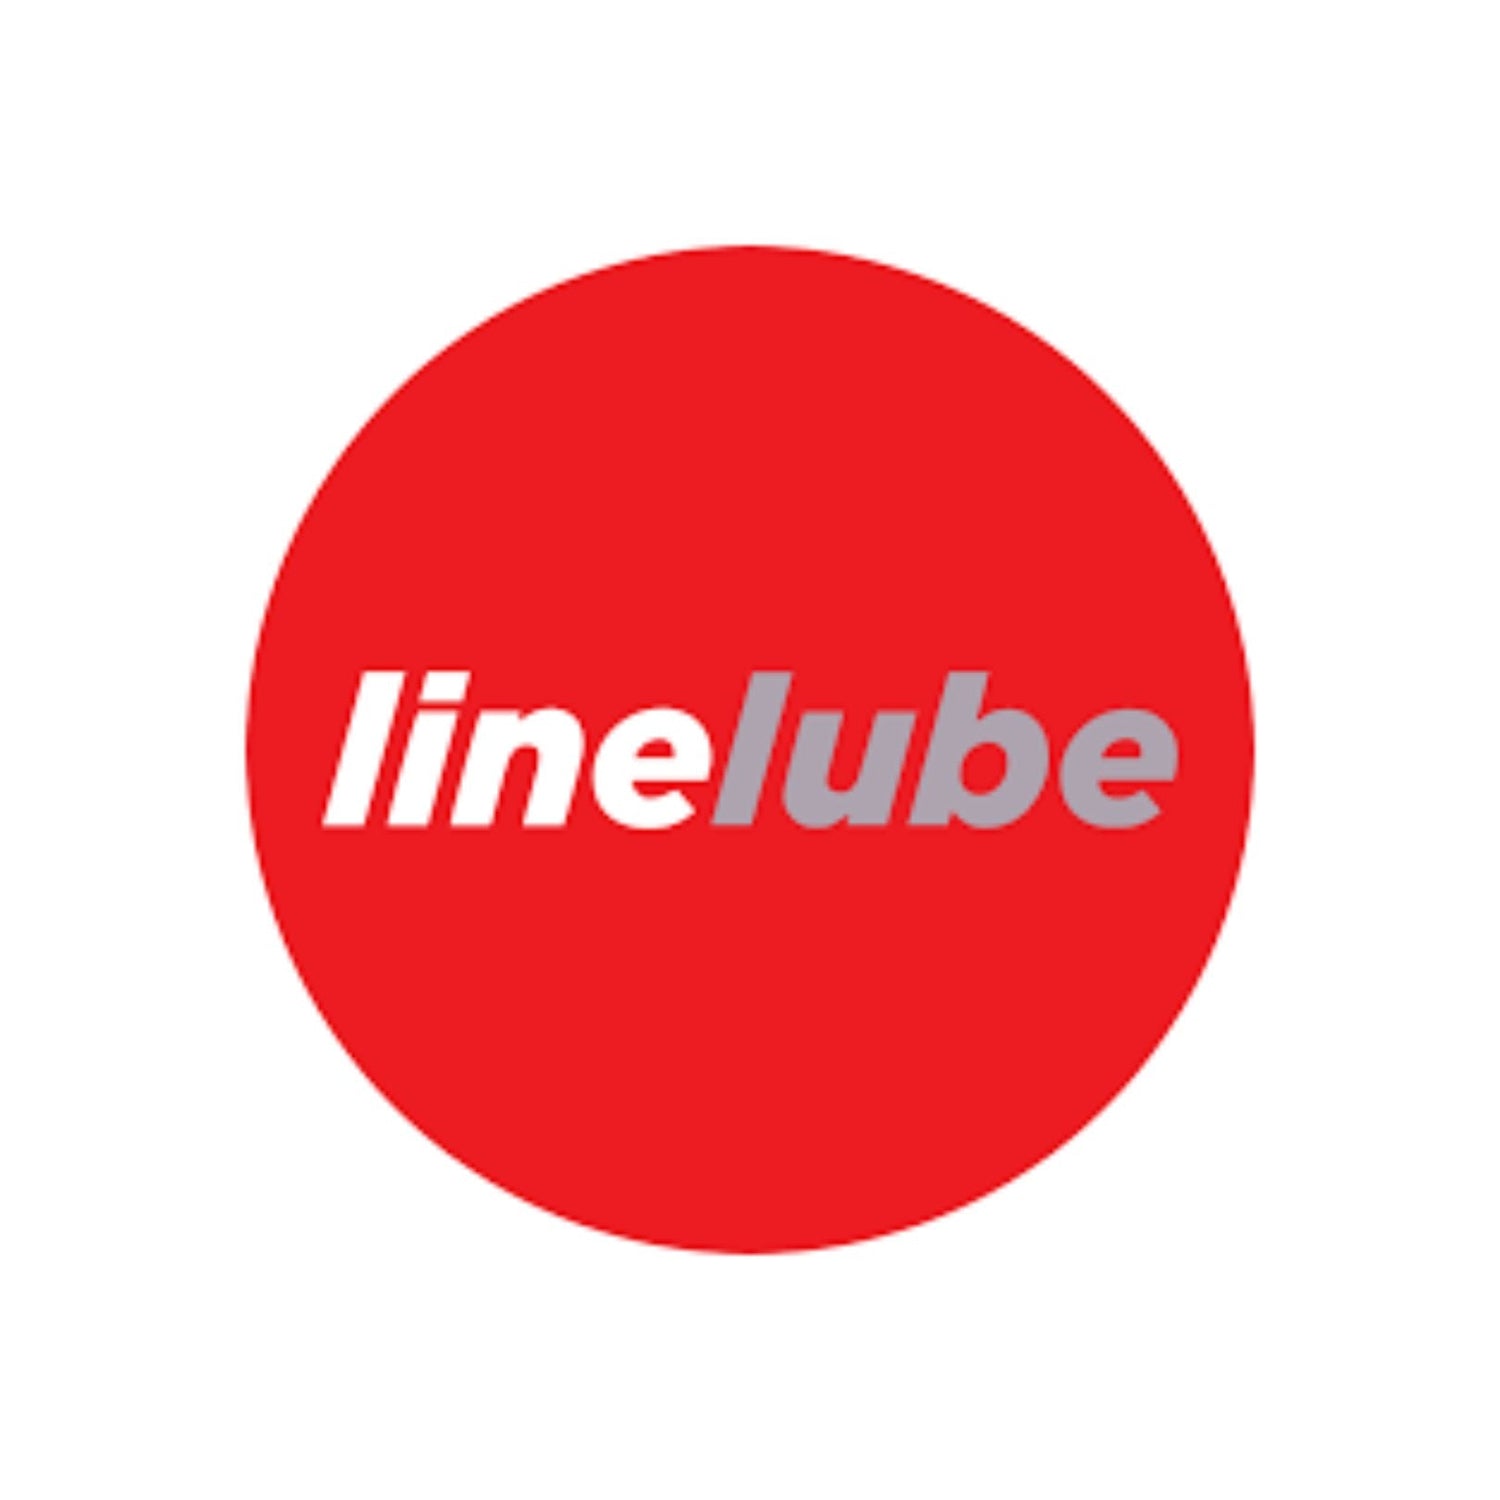 Linelube logo